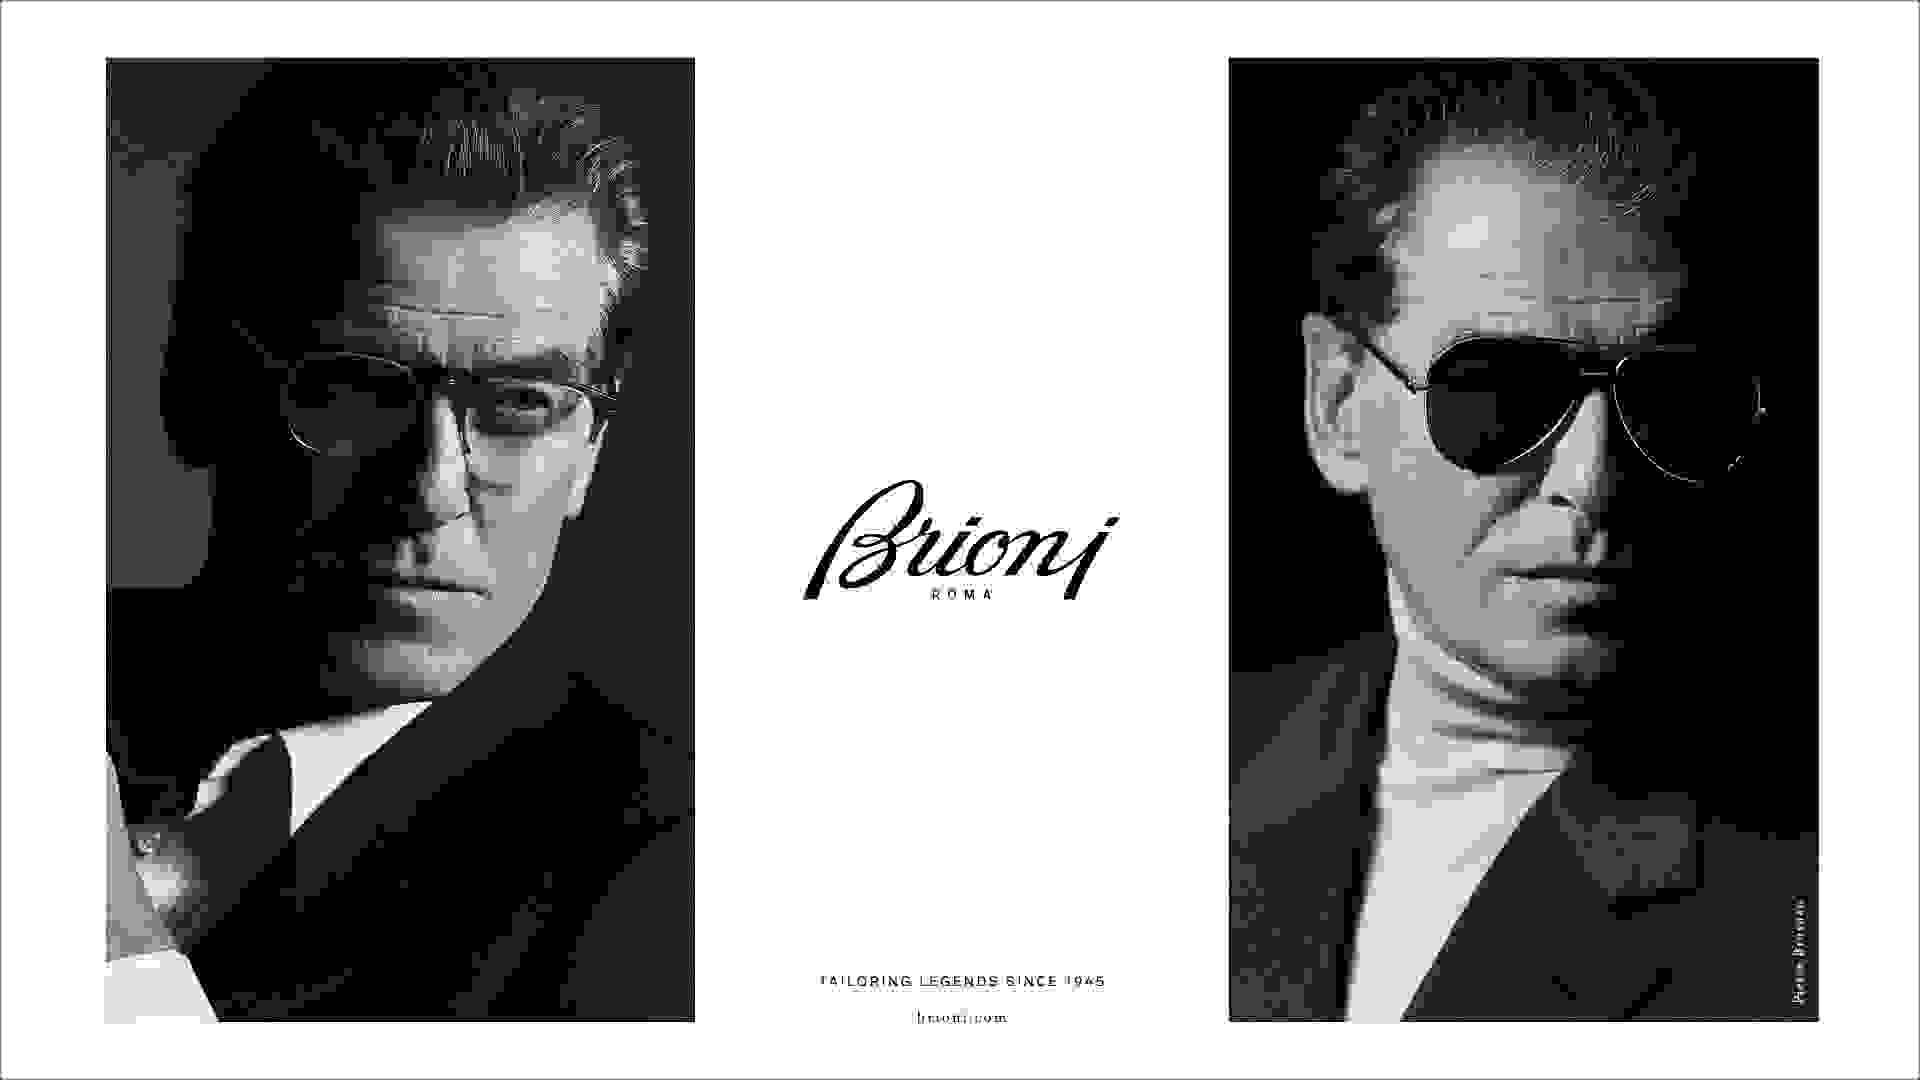 Rechts und links jeweils ein schwarz-weiß Bild von einem Mann mit Brioni Eyewear und in der Mitte das Brioni Logo.